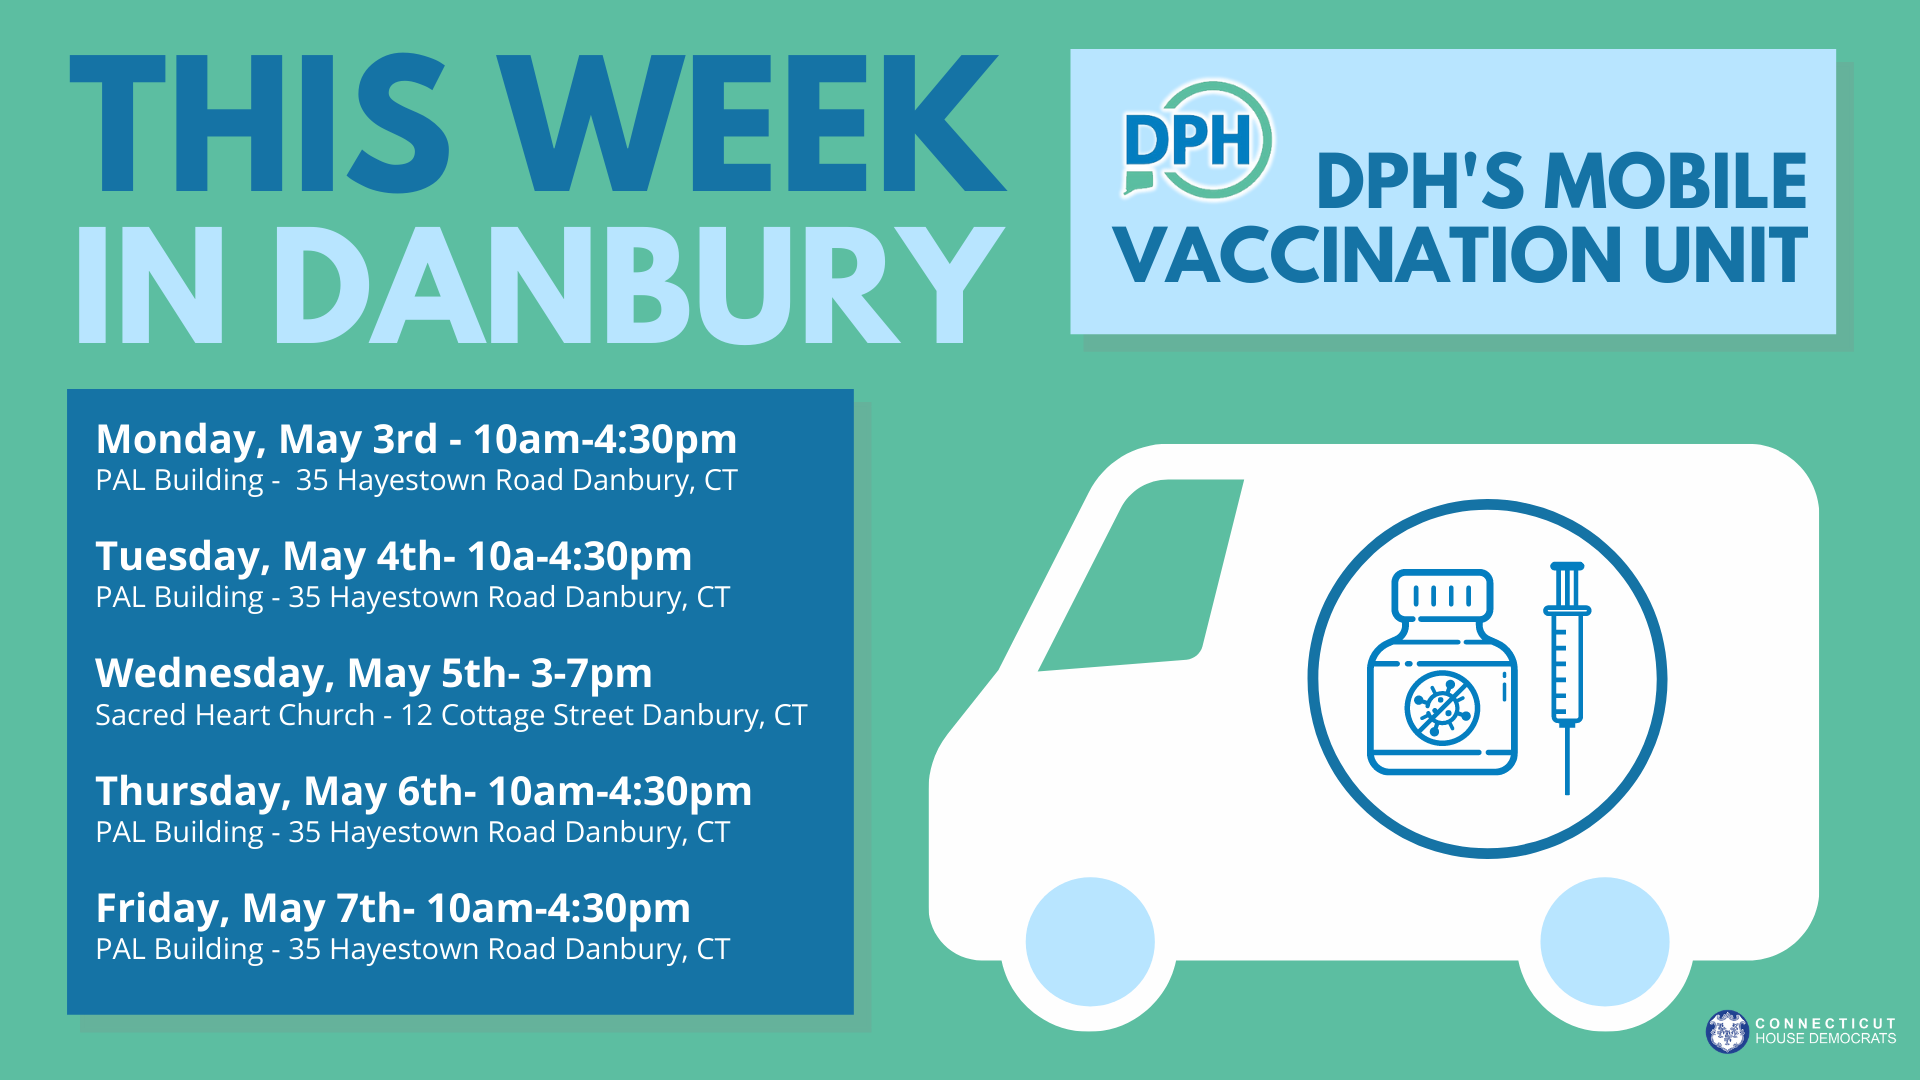 DPH Van in Danbury This Week